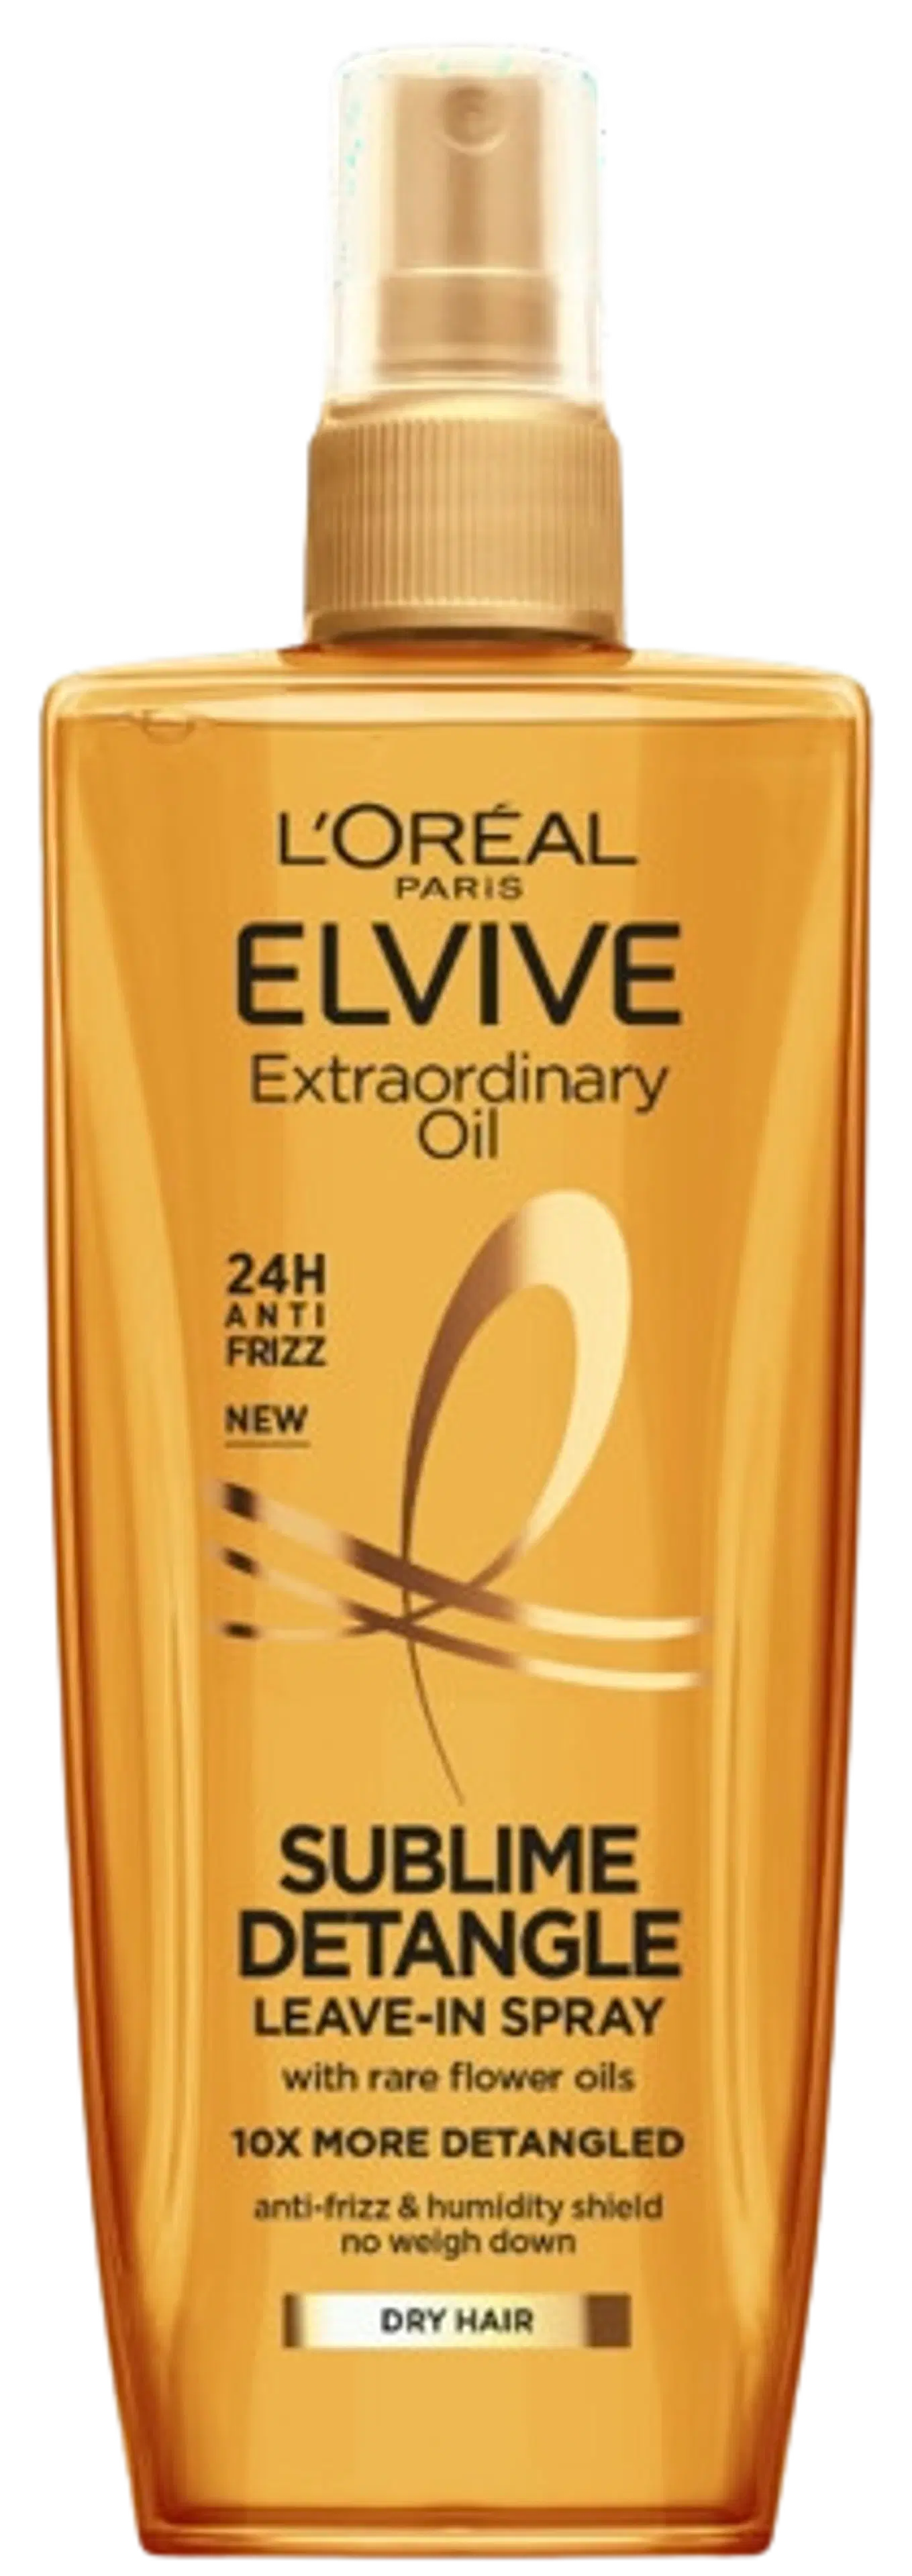 L'Oréal Paris Elvital 200ml Extraordinary Oil jätettävä hoitoainesuihke kuiville hiuksille 200ml